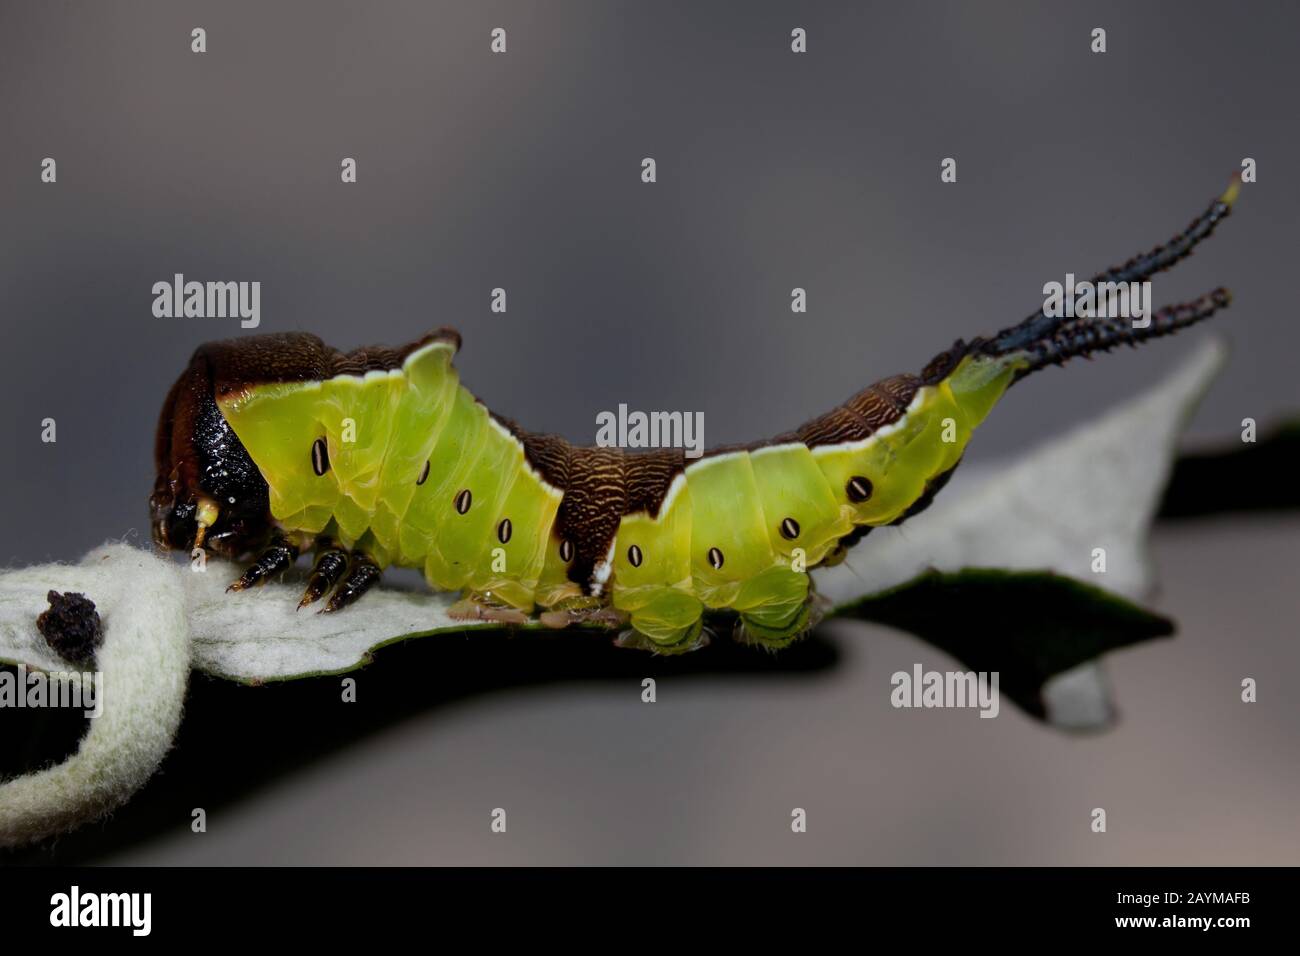 Kleiner Kater Motte, katzenartig (Cerura erminea), Raupe auf einem verwelkten Blatt, Deutschland Stockfoto